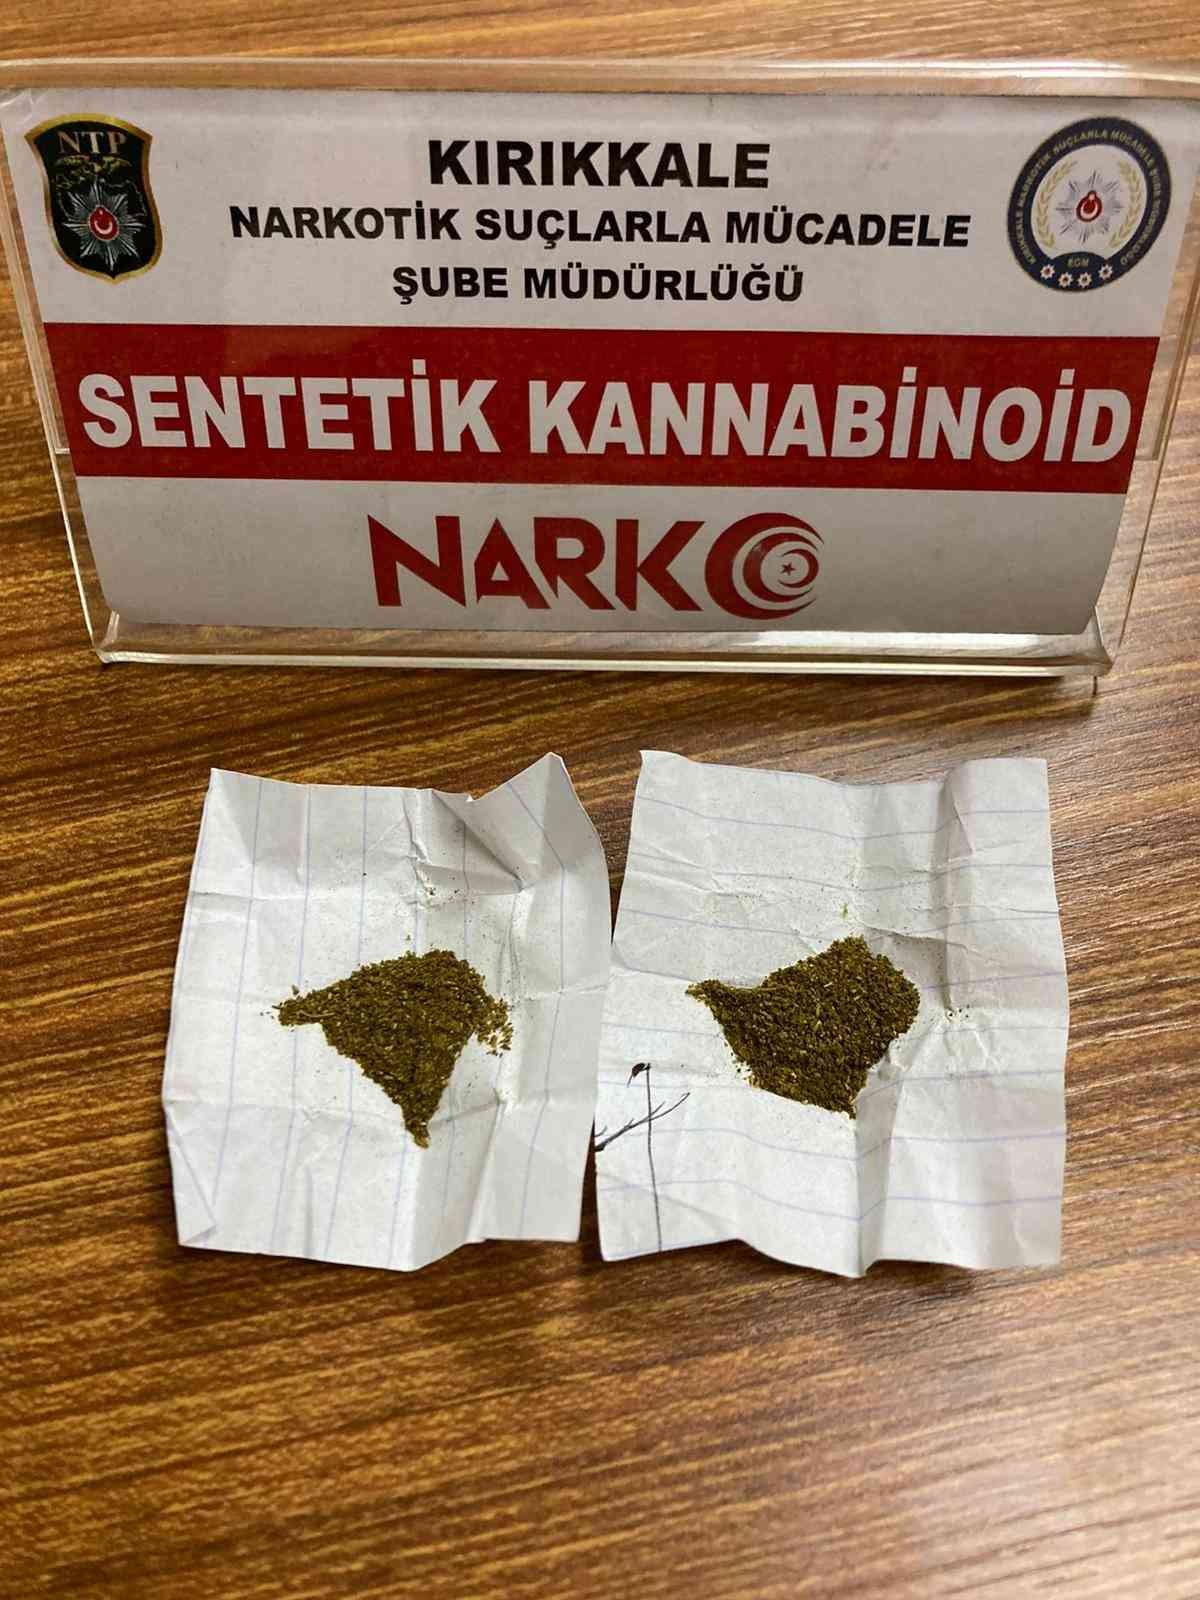 6194f0fad2519-Kırıkkale’de uyuşturucu taciri tutuklandı.jpg